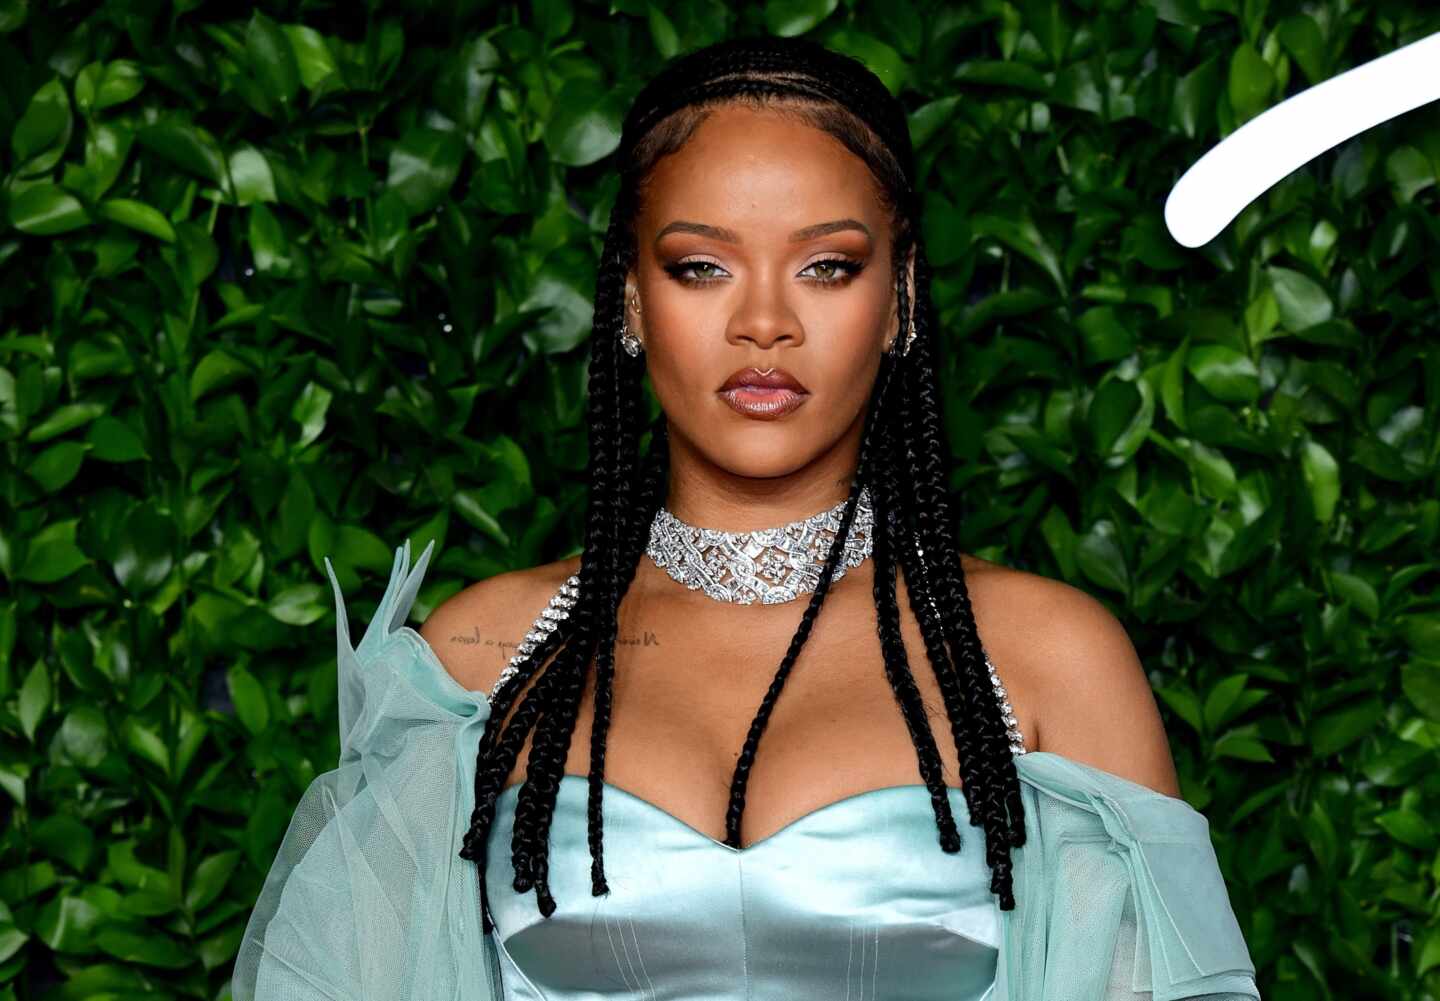 Zara té la versió low cost de l'abric verd amb el qual Rihanna va sopar a Nova York fa un parell de nits